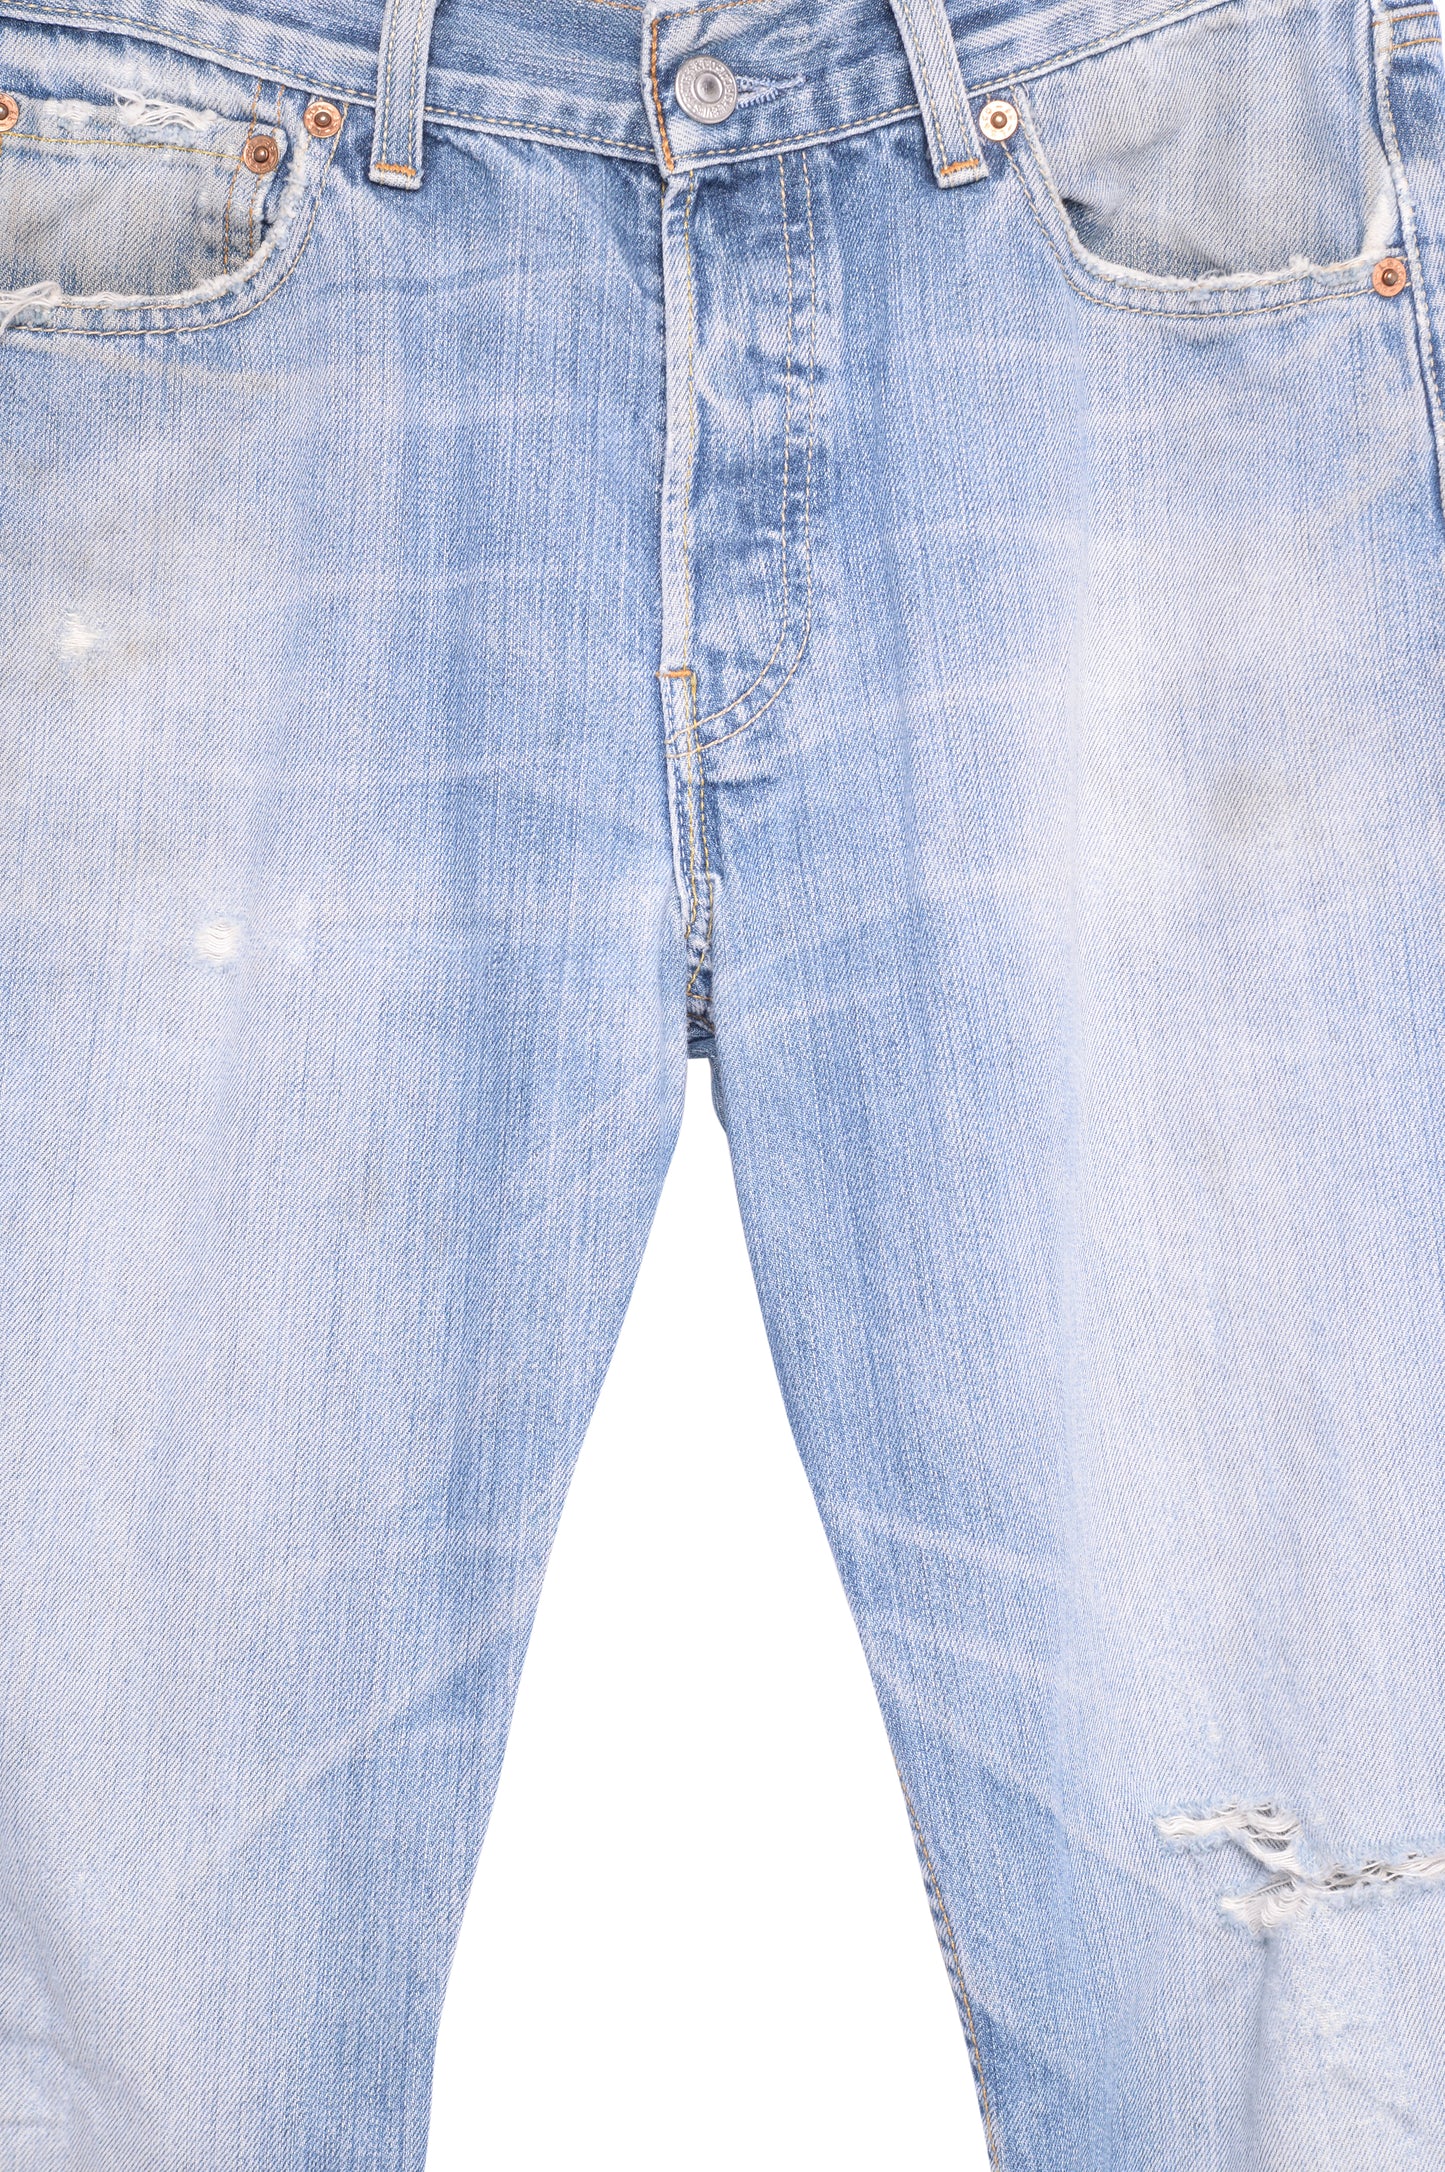 Faded Straight Levi's 501 Jeans 29W x 29L